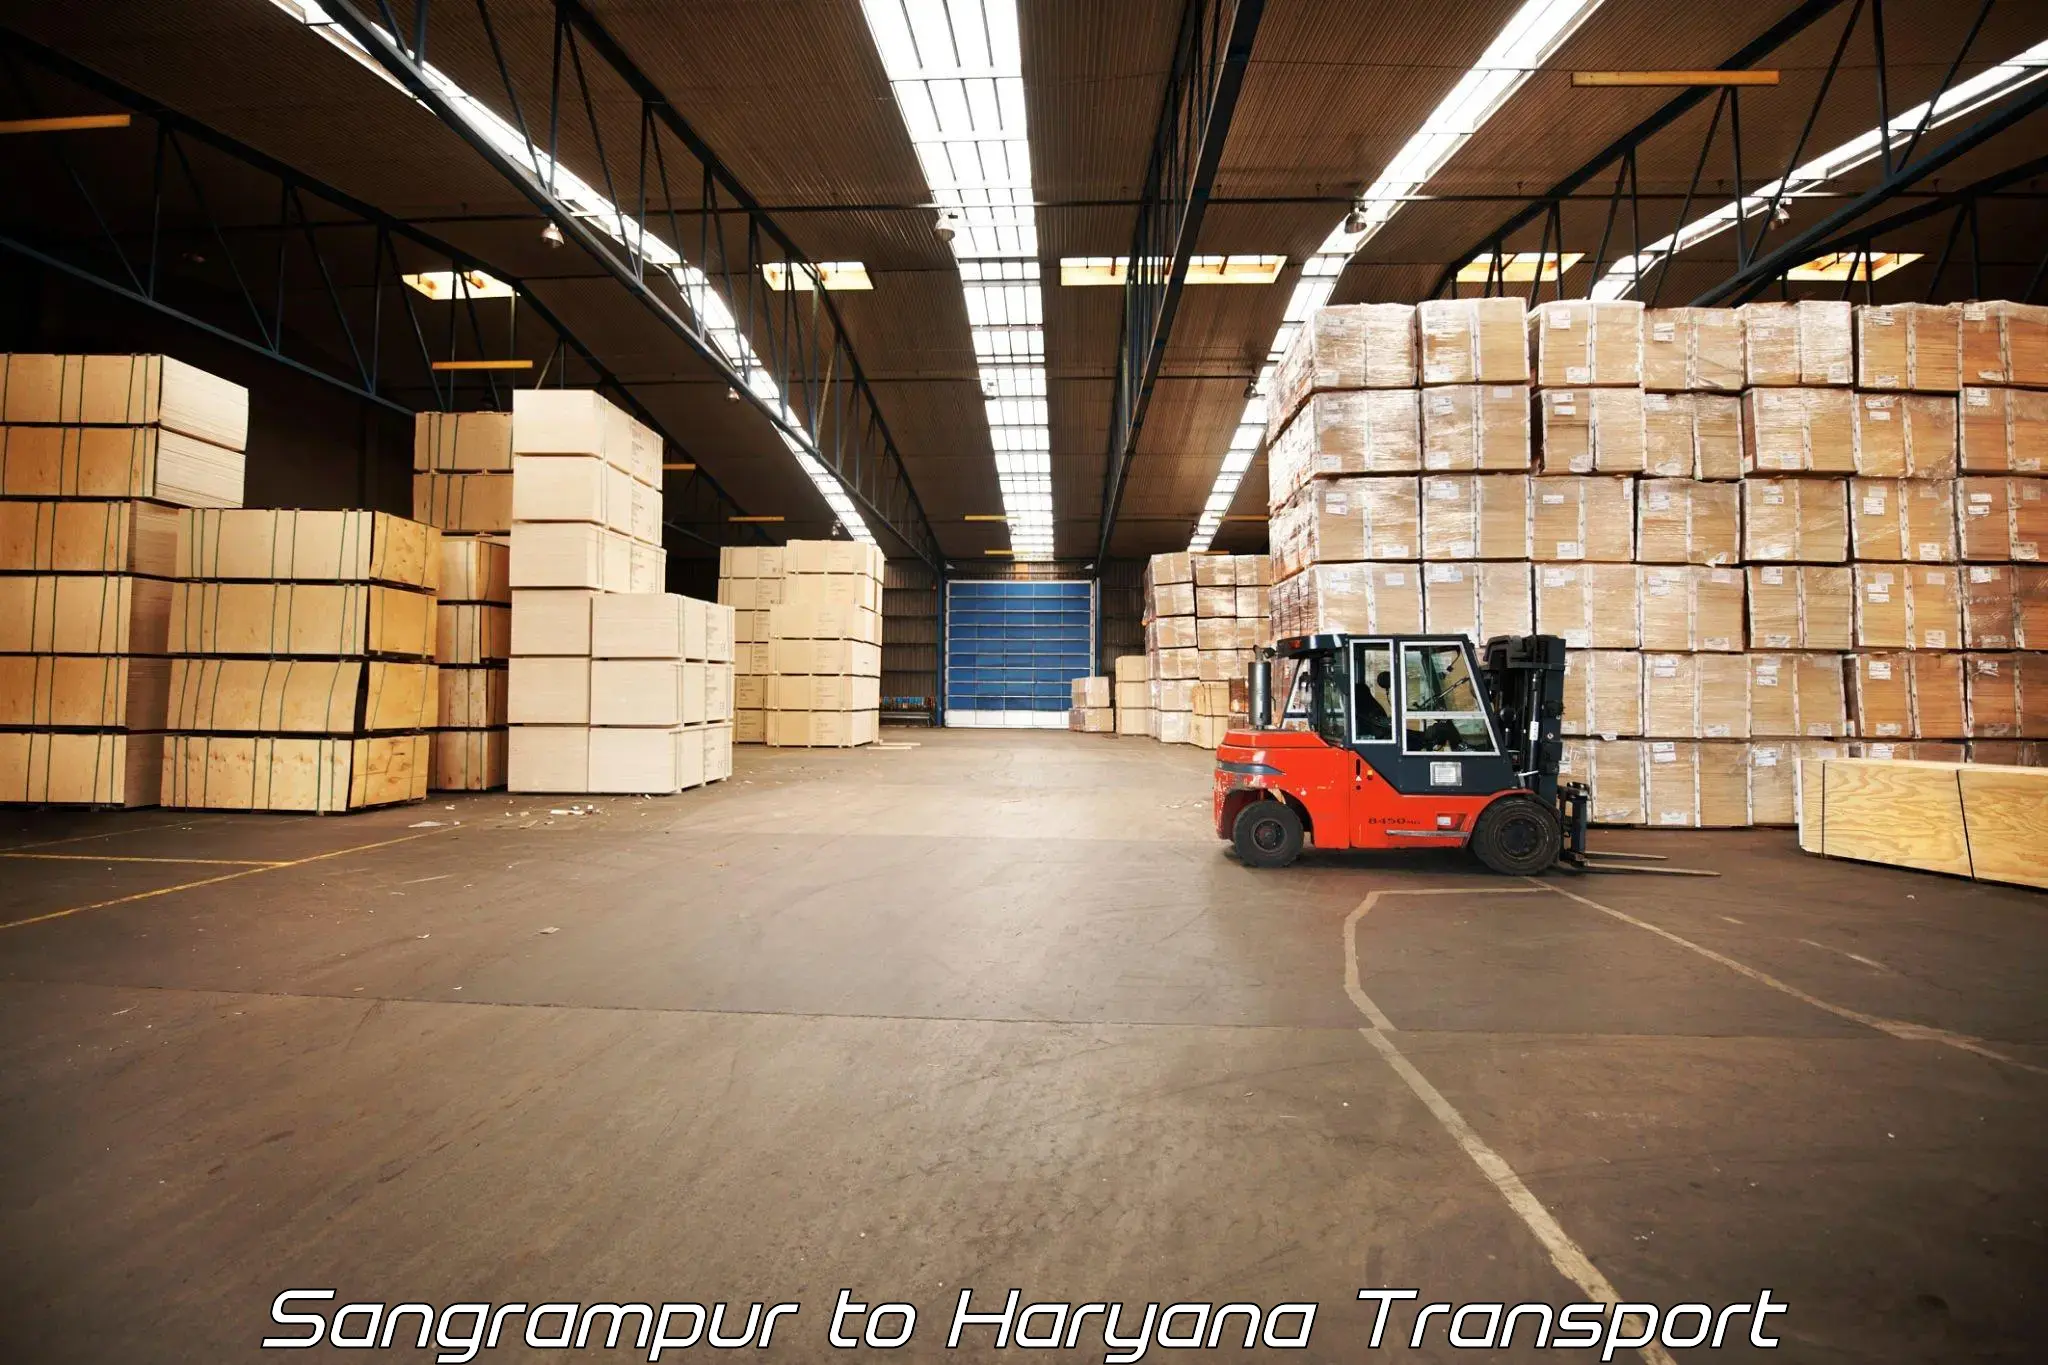 Lorry transport service Sangrampur to Sirsa